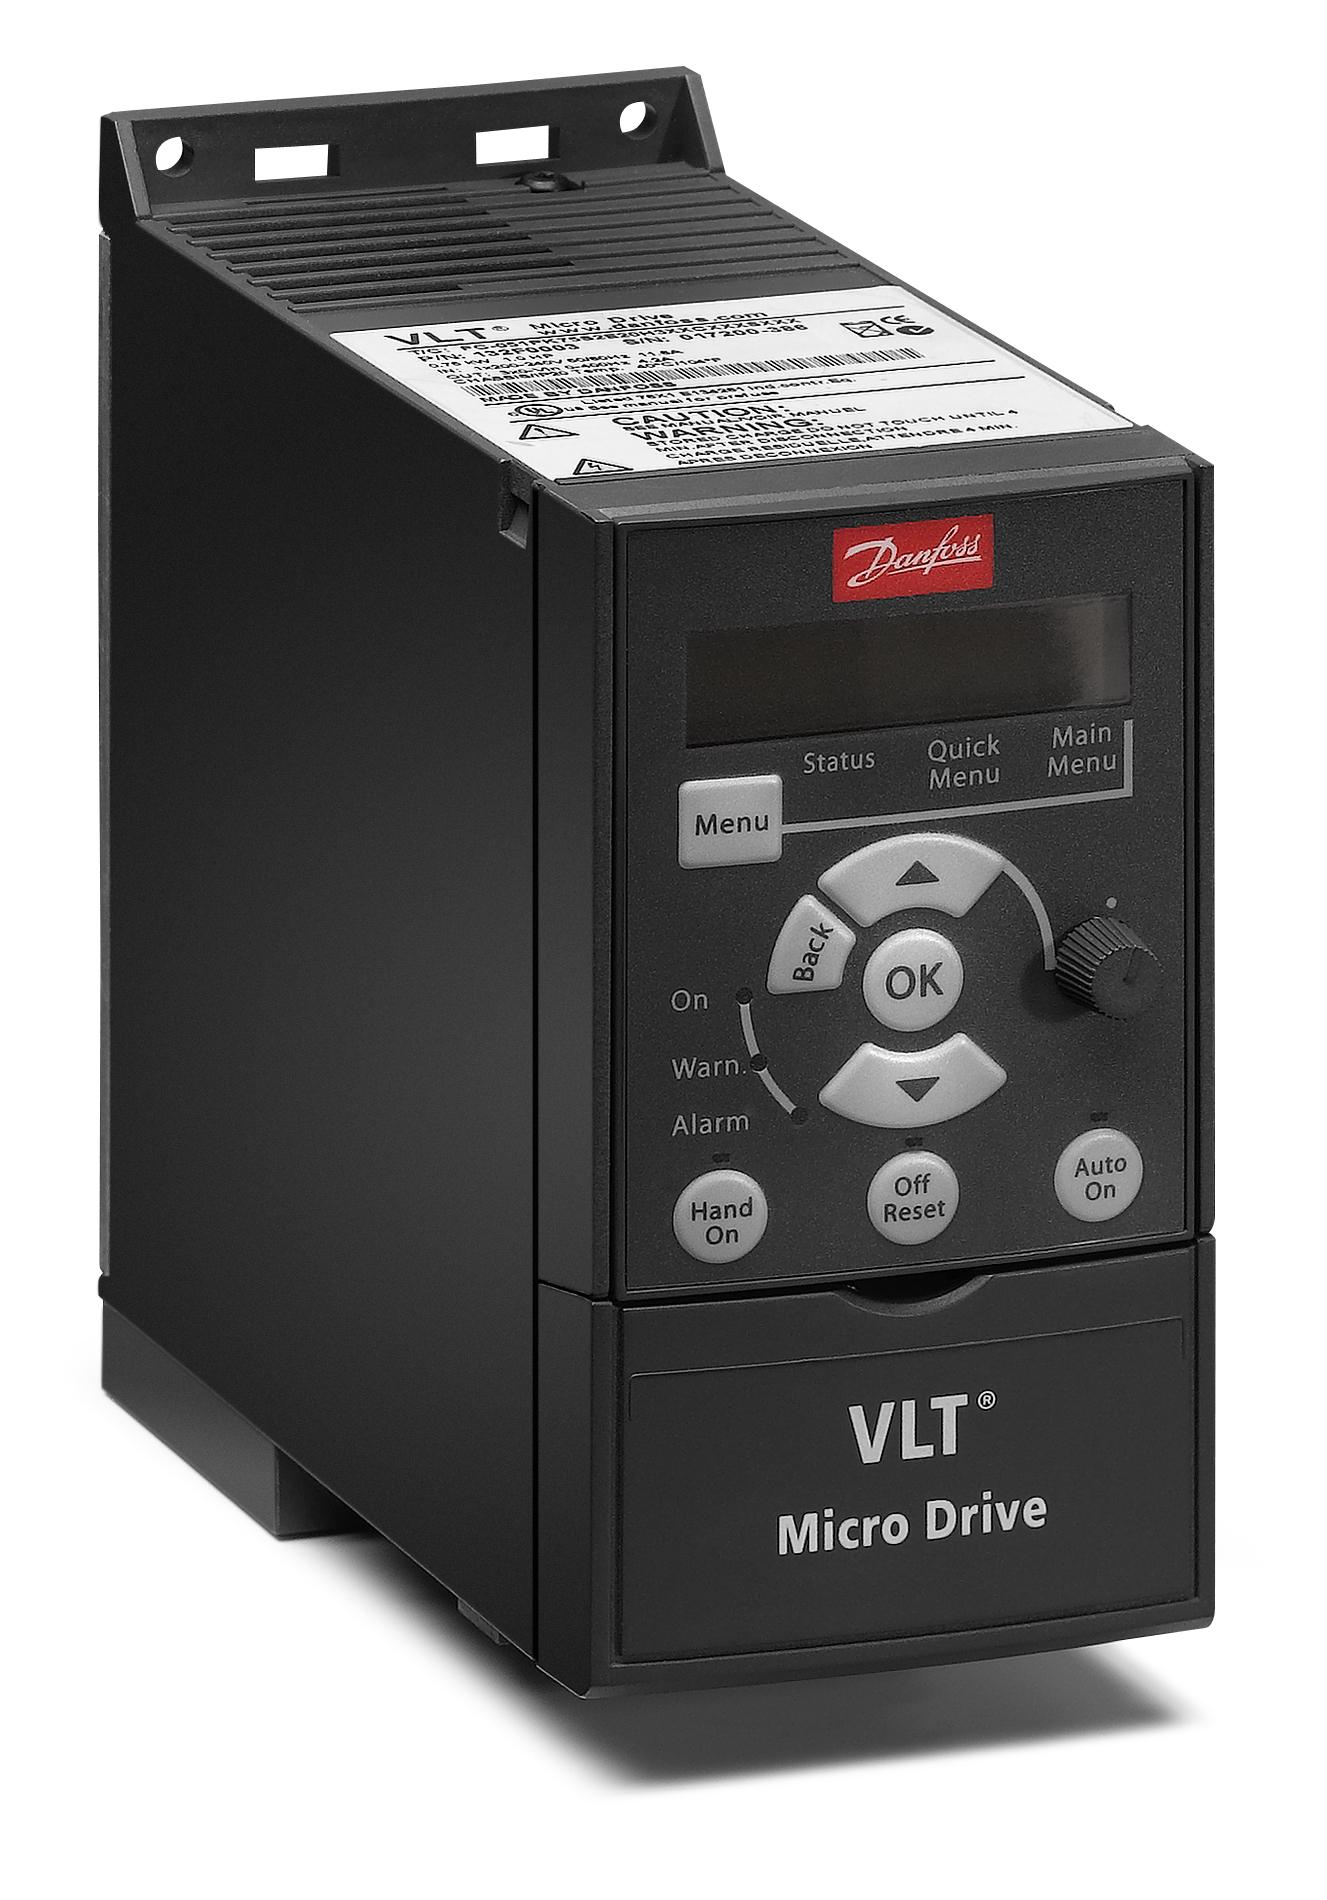 MicroDrive_M1.jpg | VLT Micro Drive FC 51 | официальный сайт Danfoss Россия